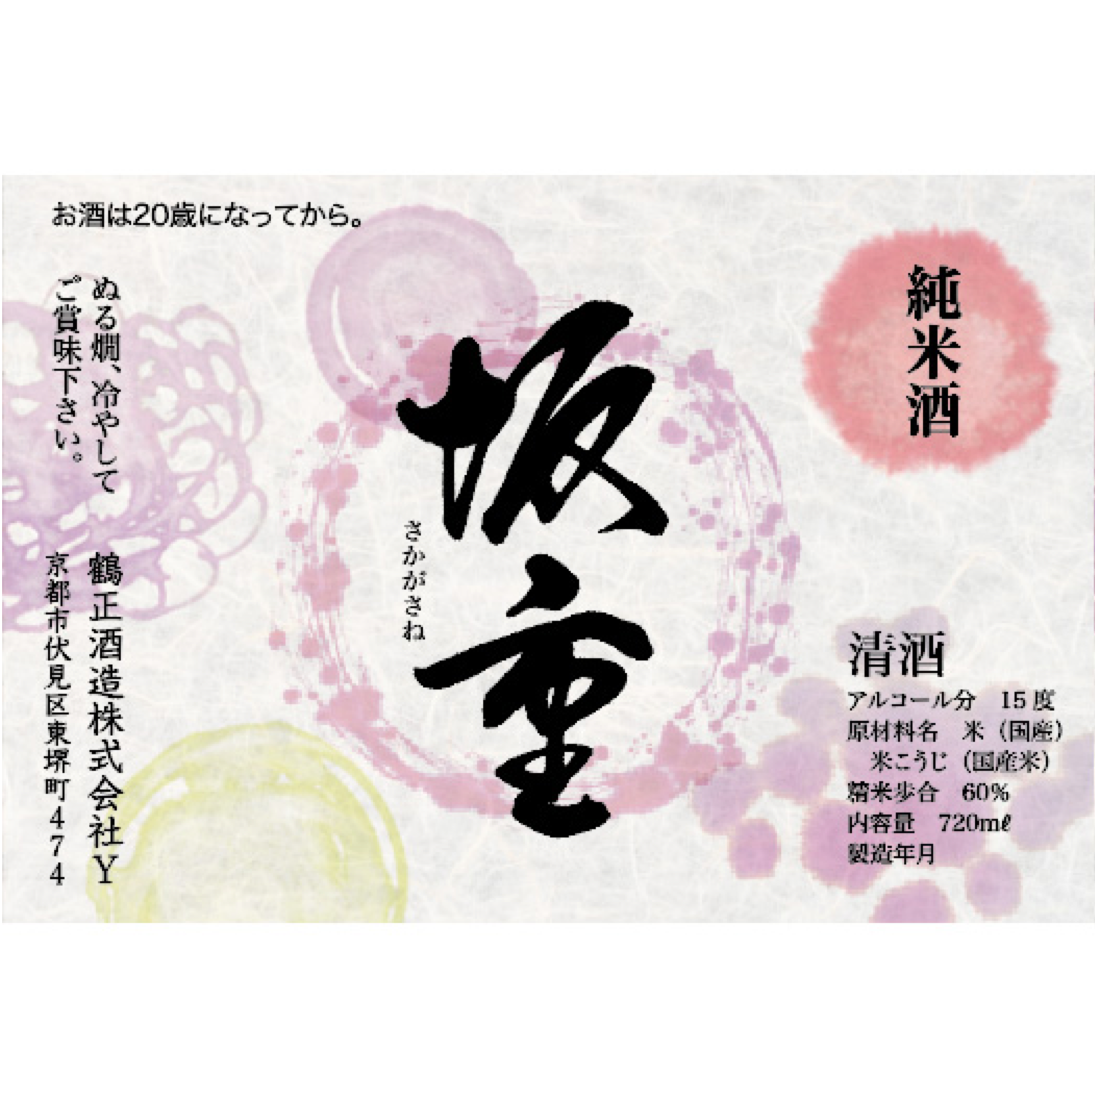 第157回 春の天皇賞限定 日本酒ラベルデザイン